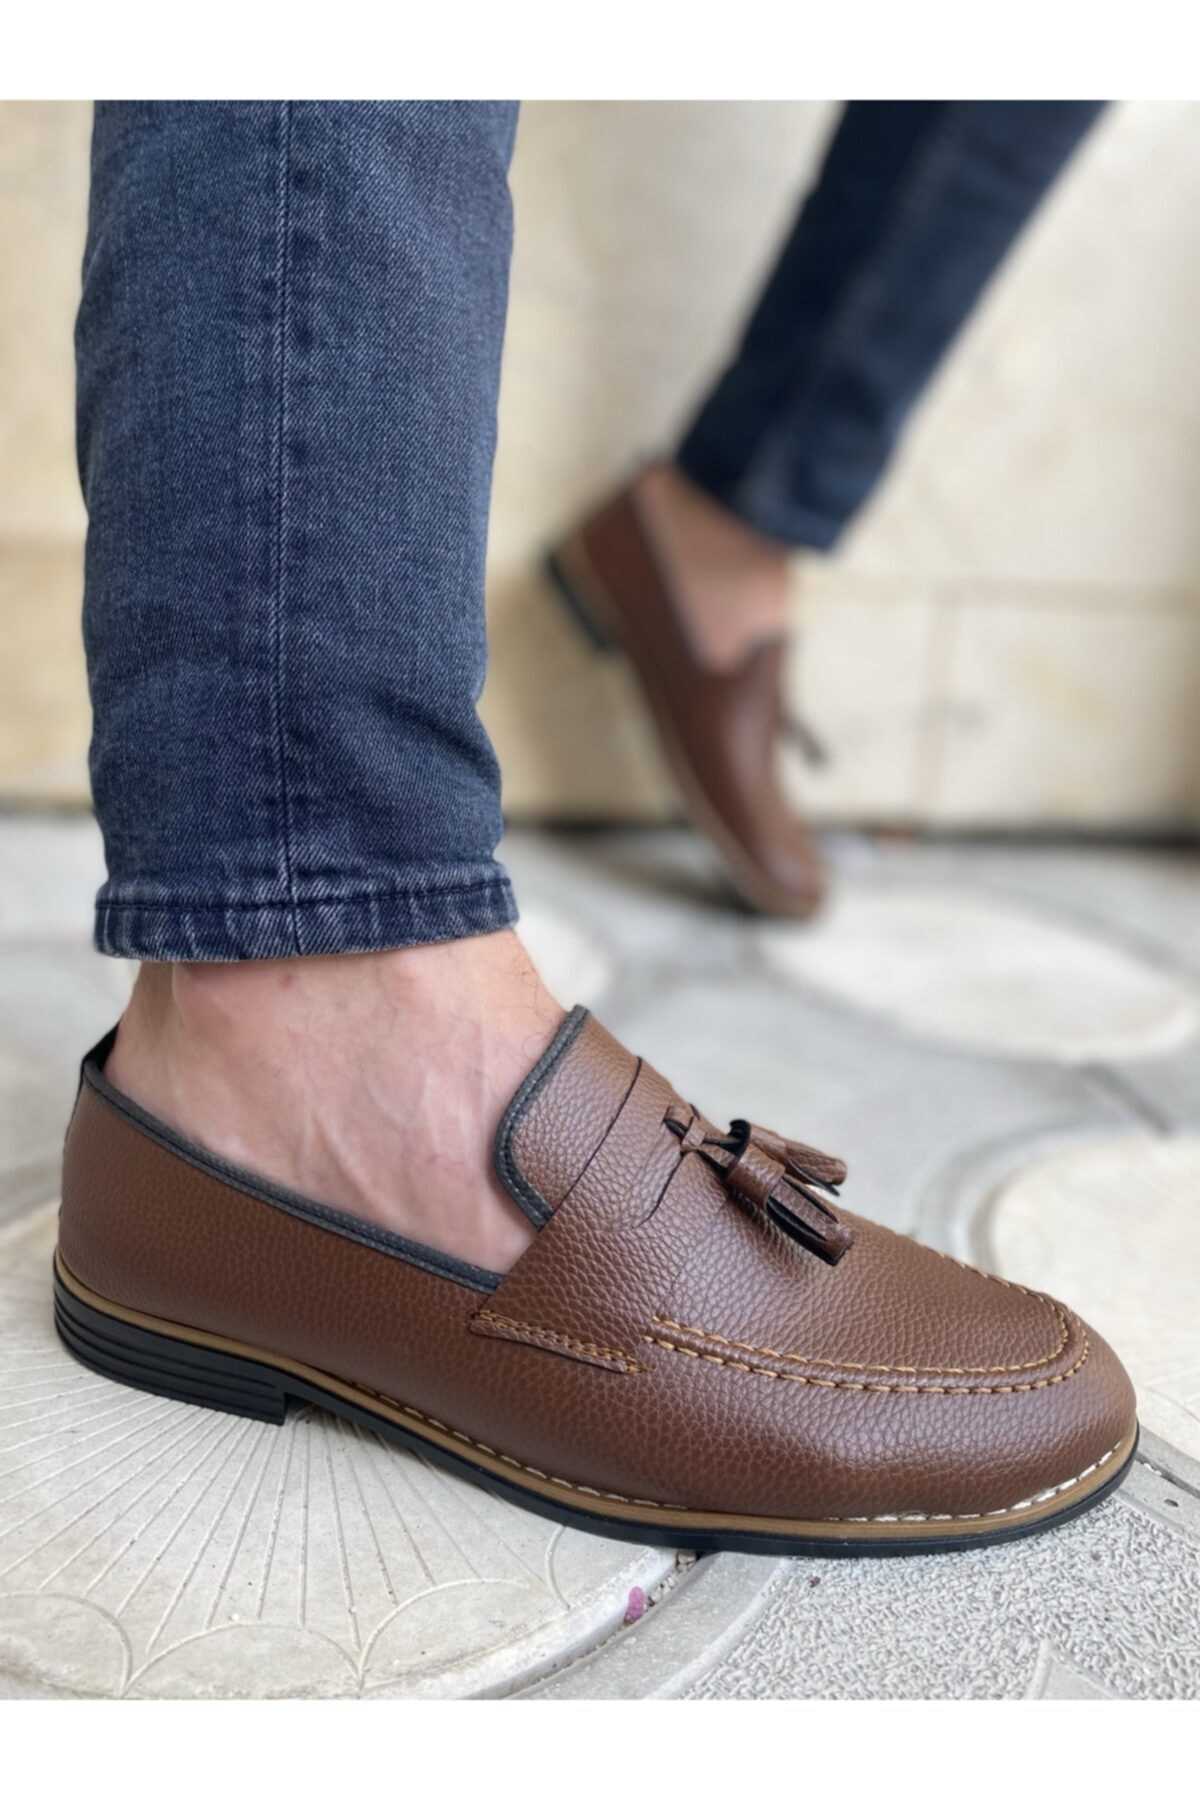 خرید کفش کلاسیک مردانه شیک مجلسی برند TarzKar رنگ قهوه ای کد ty93621994